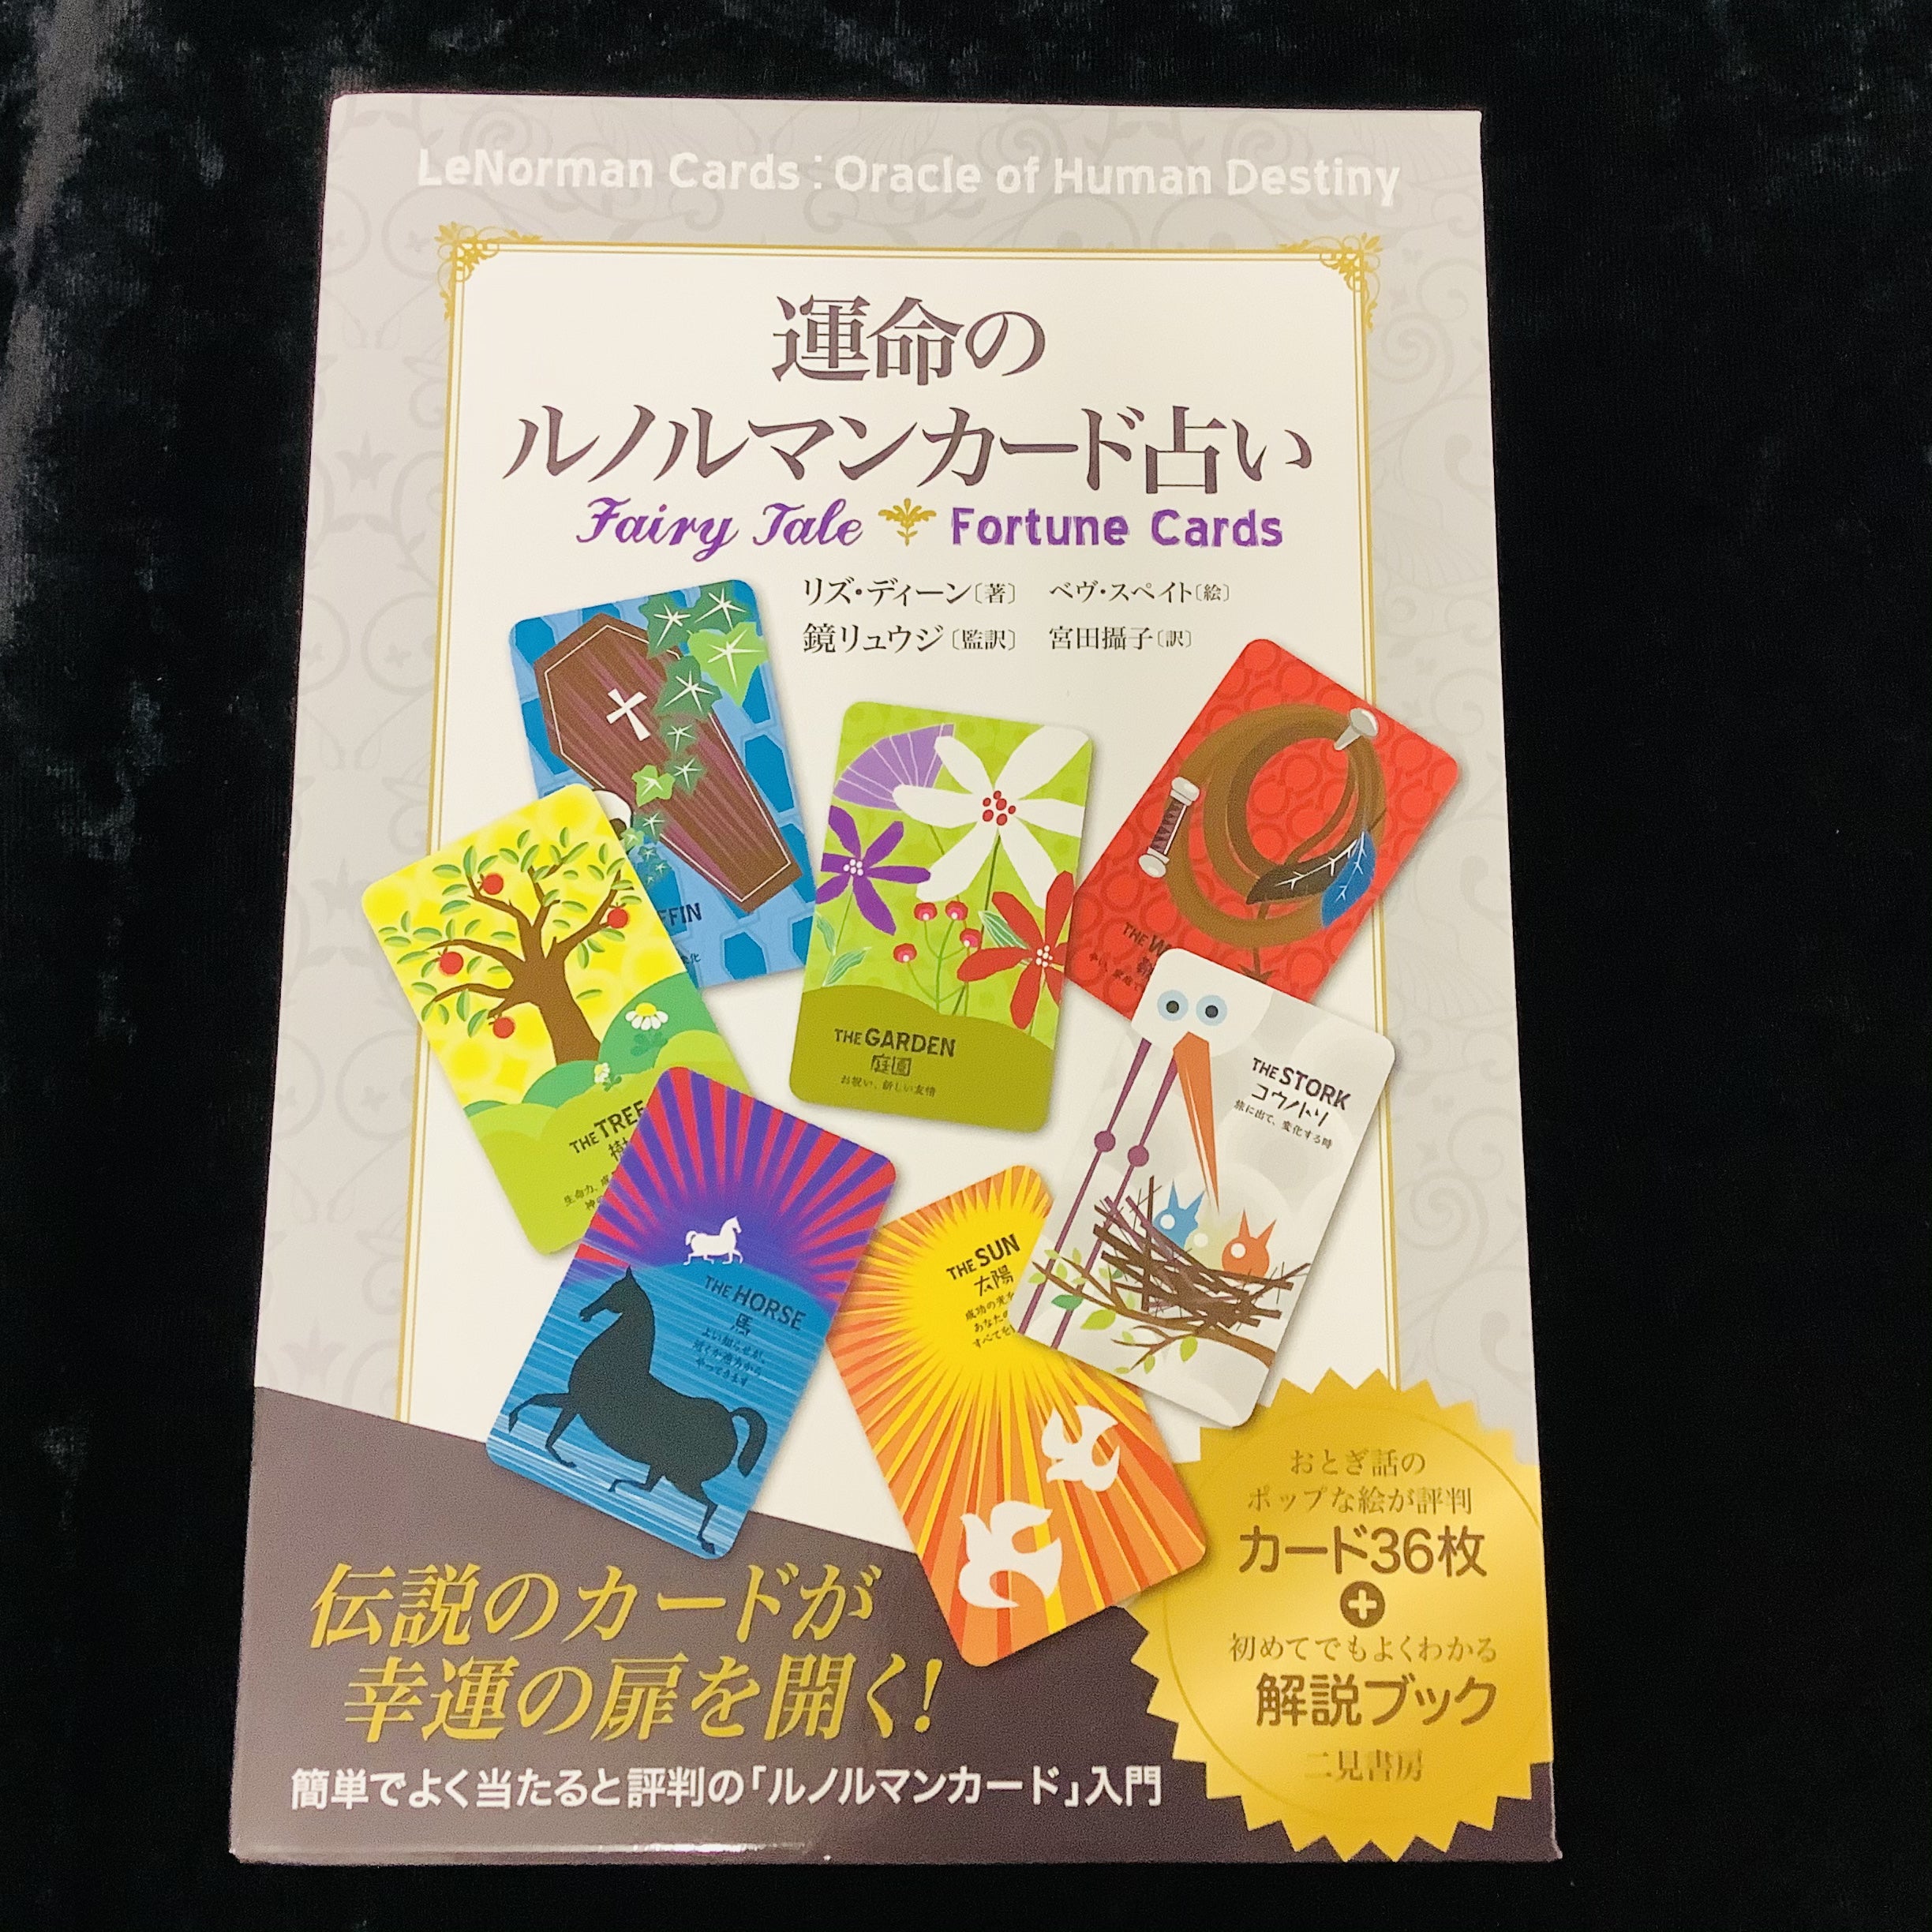 カード紹介 】運命のルノルマンカード占い | 日本のオラクルカード 